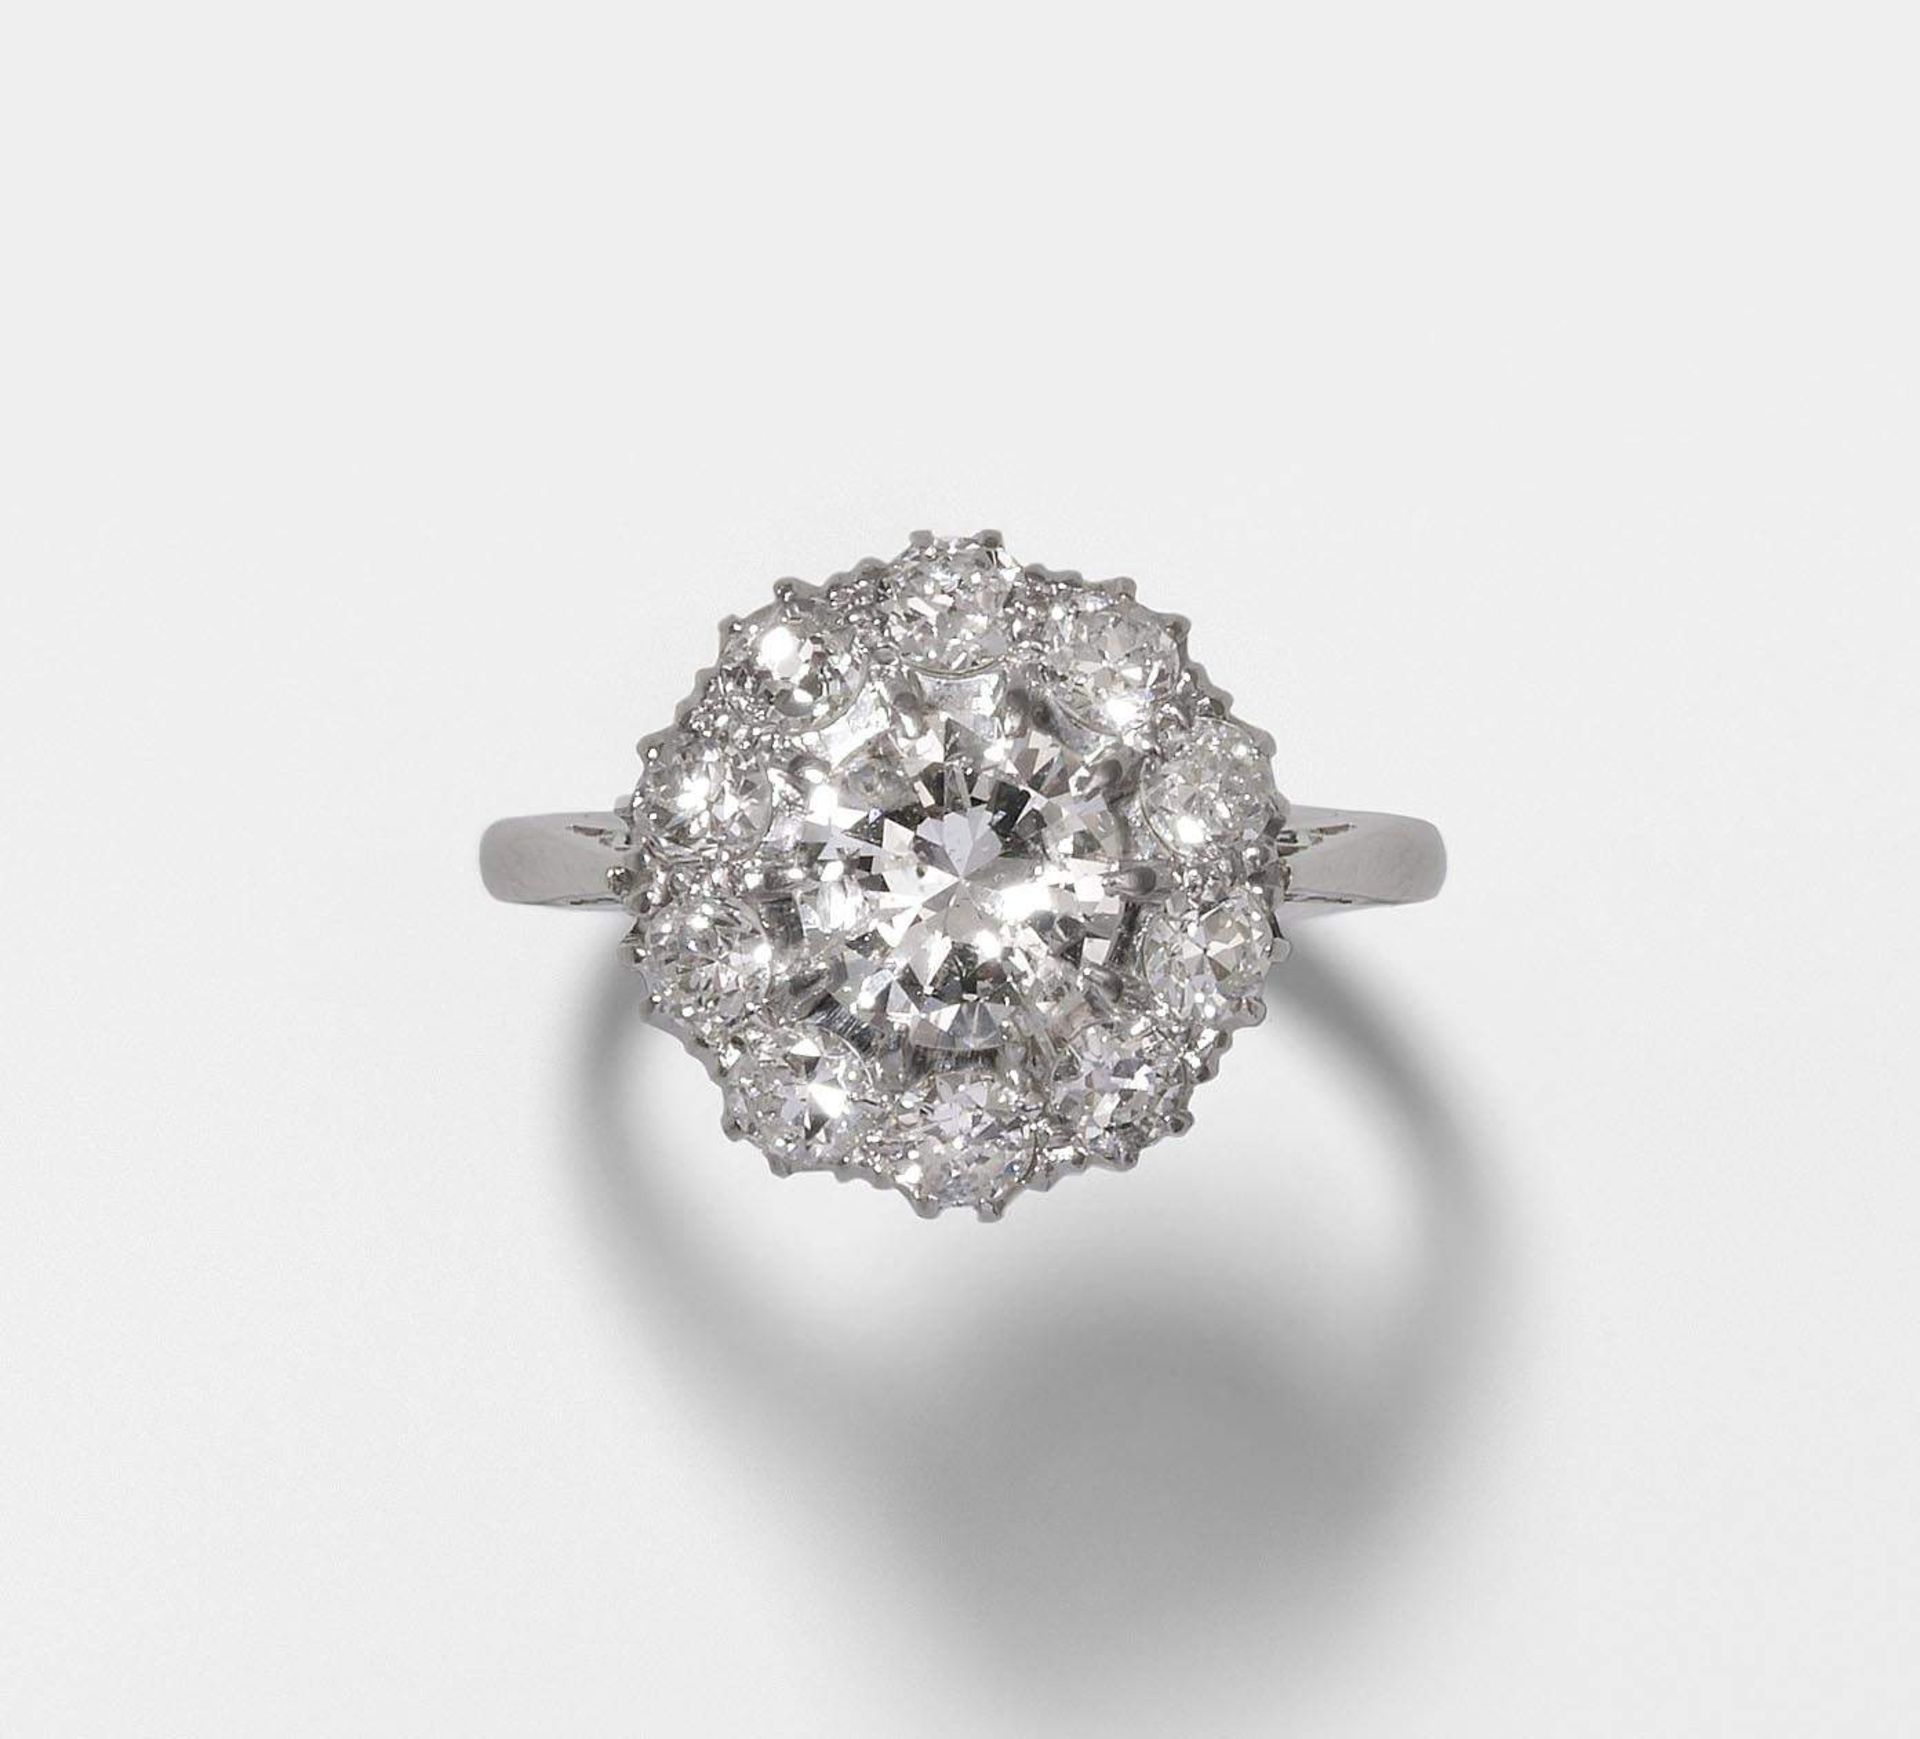 Diamant-Ring
um 1920. 950 Platin/375 Weissgold (550). Entourage-Modell mit 1 Brillant von ca. 1